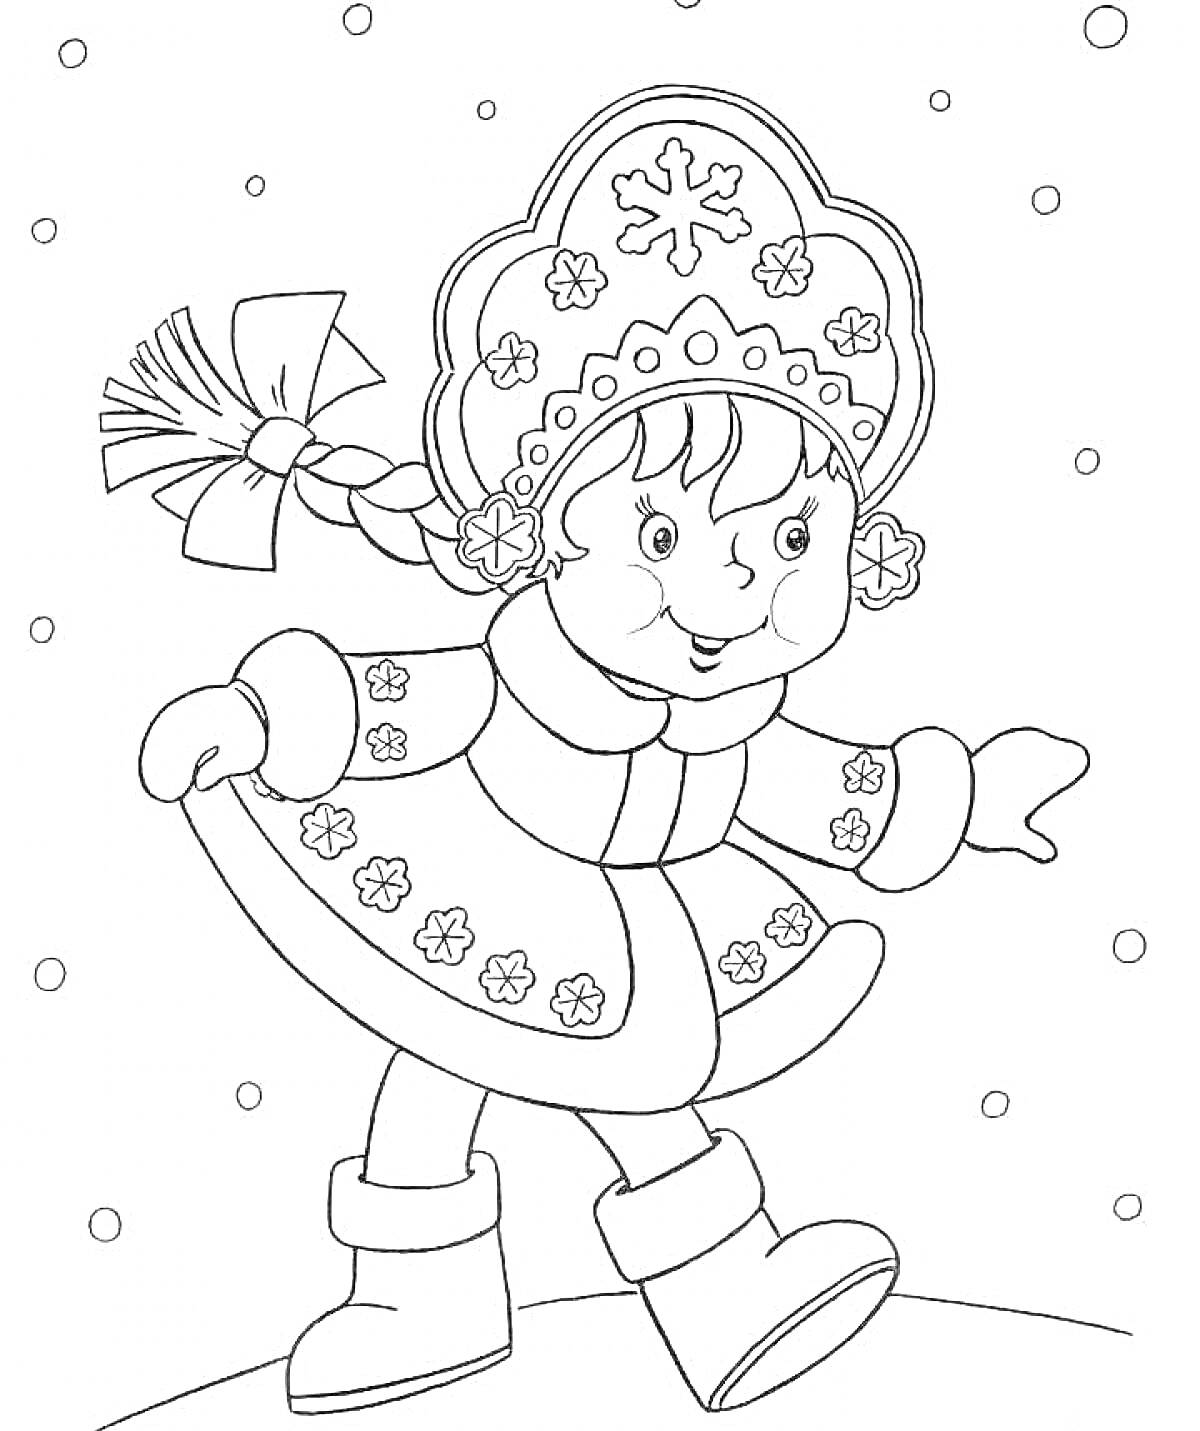 Снегурочка в шубке со снежинками и кокошнике, гуляющая на снегу